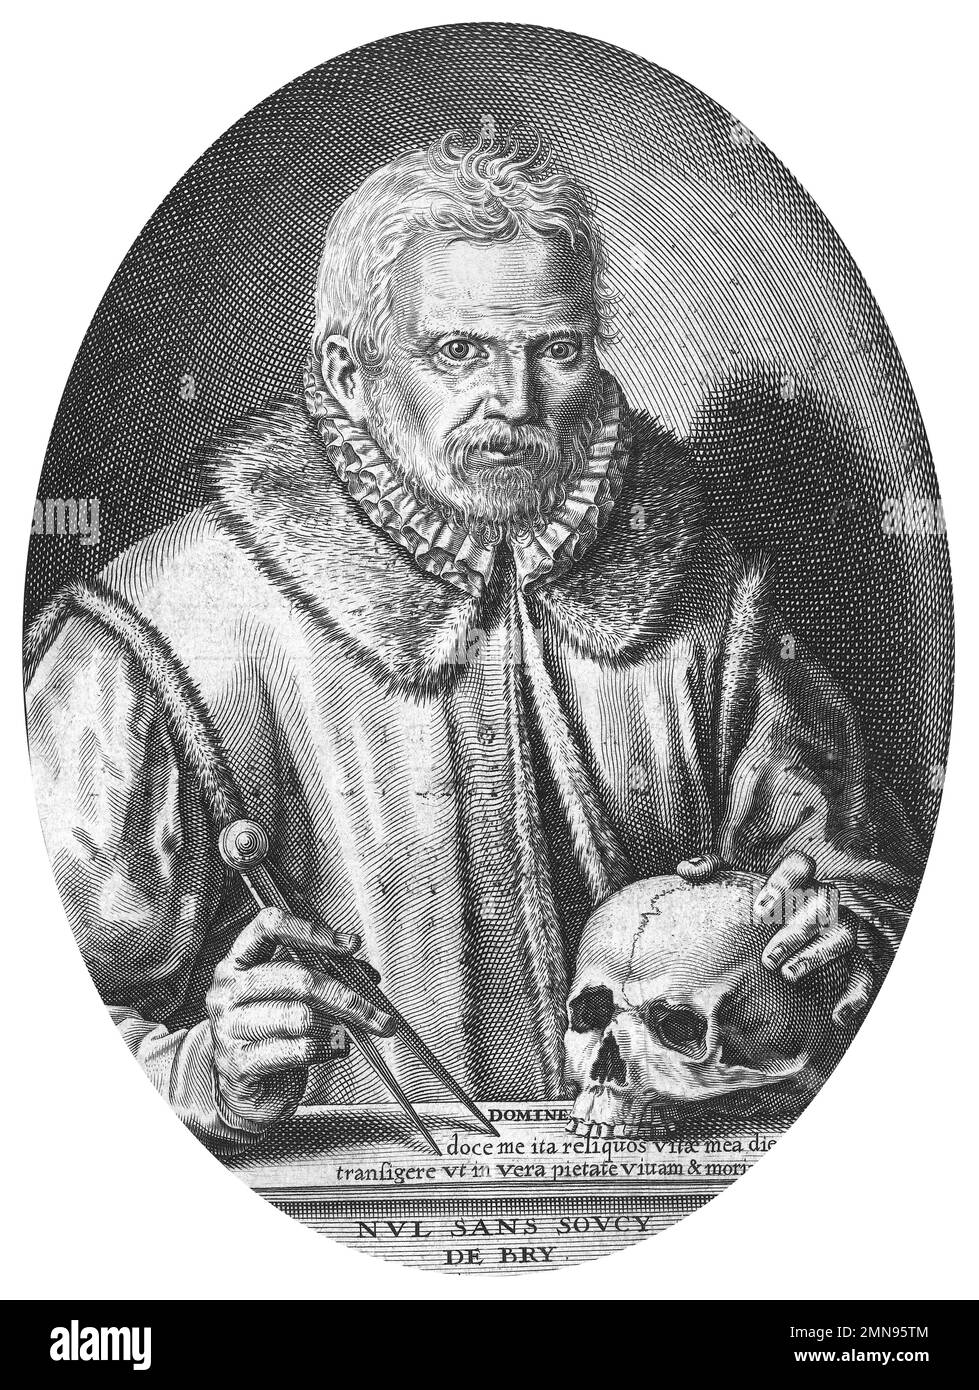 Theodor de Bry. Autoritratto dell'incisore olandese, Theodor de Bry (Theodorus de Bry: 1528-1598), incisione / stampa letteraria 1597 Foto Stock